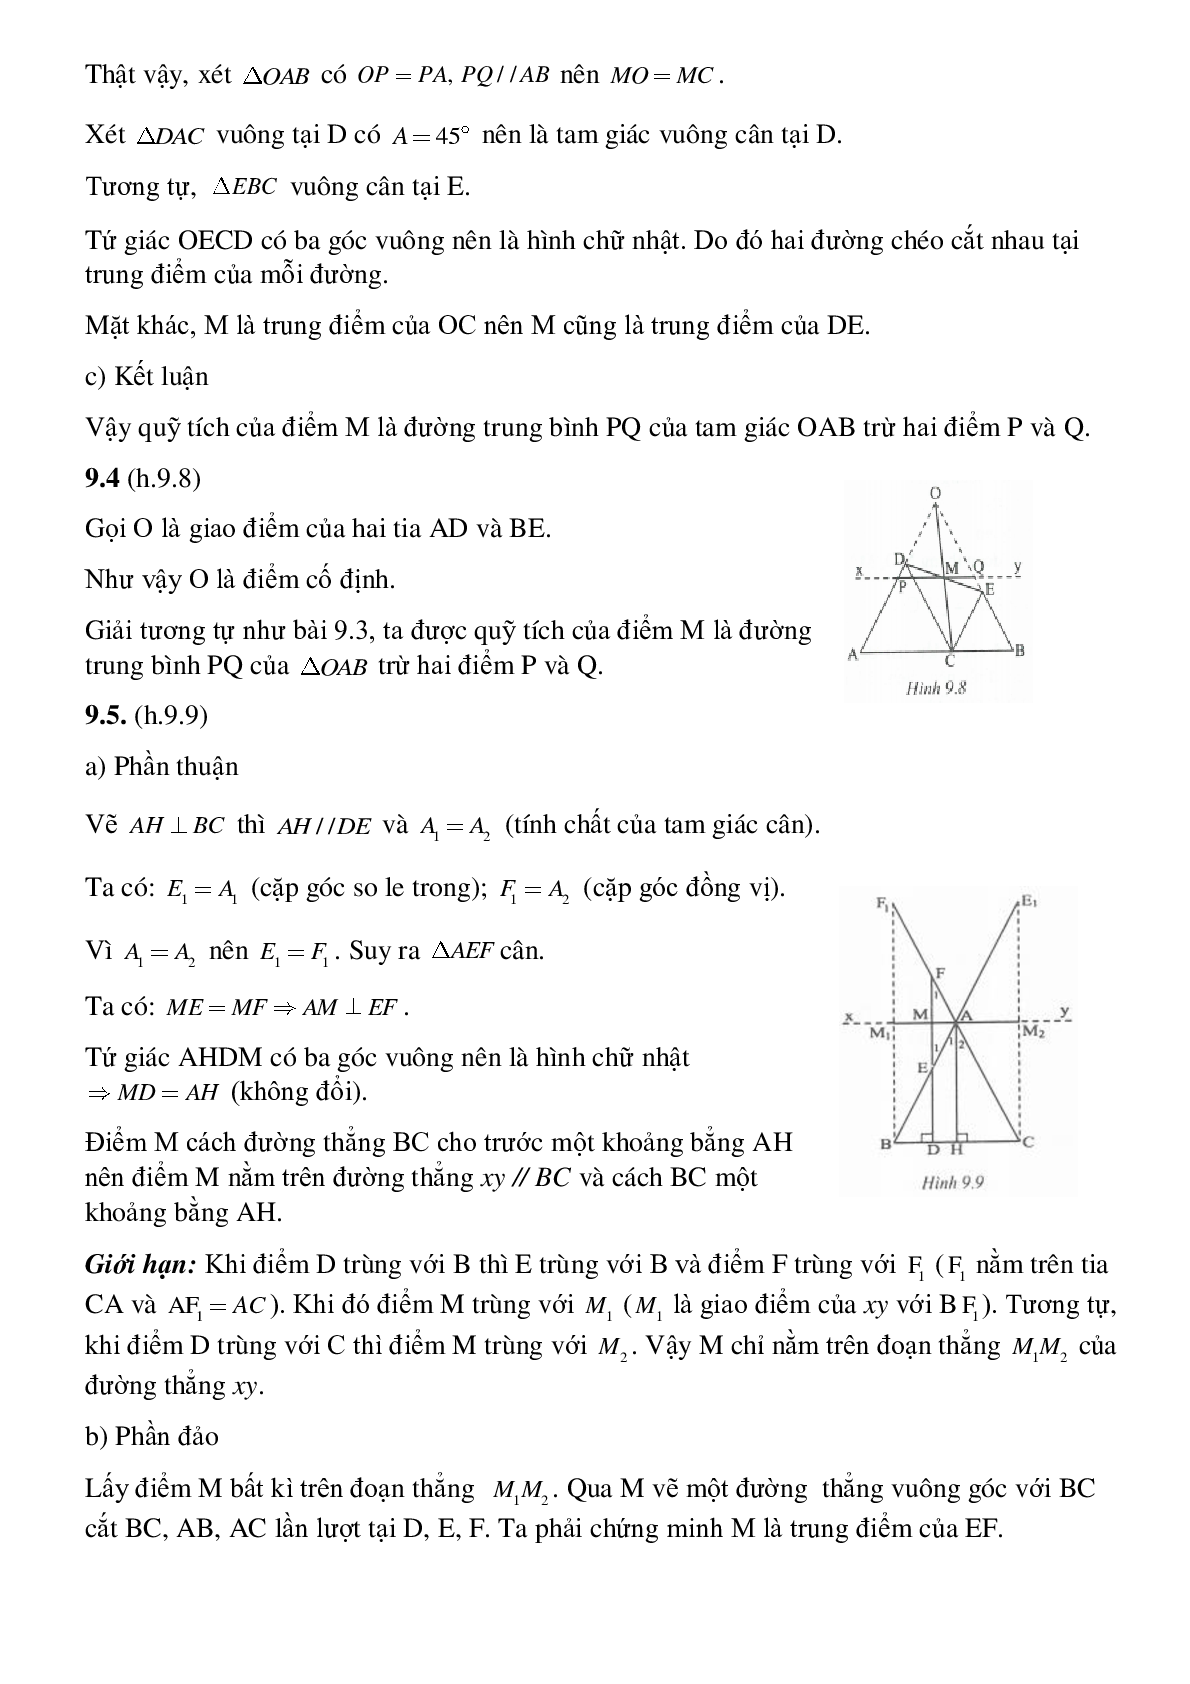 Toán quỹ tích - Hình học toán 8 (trang 9)